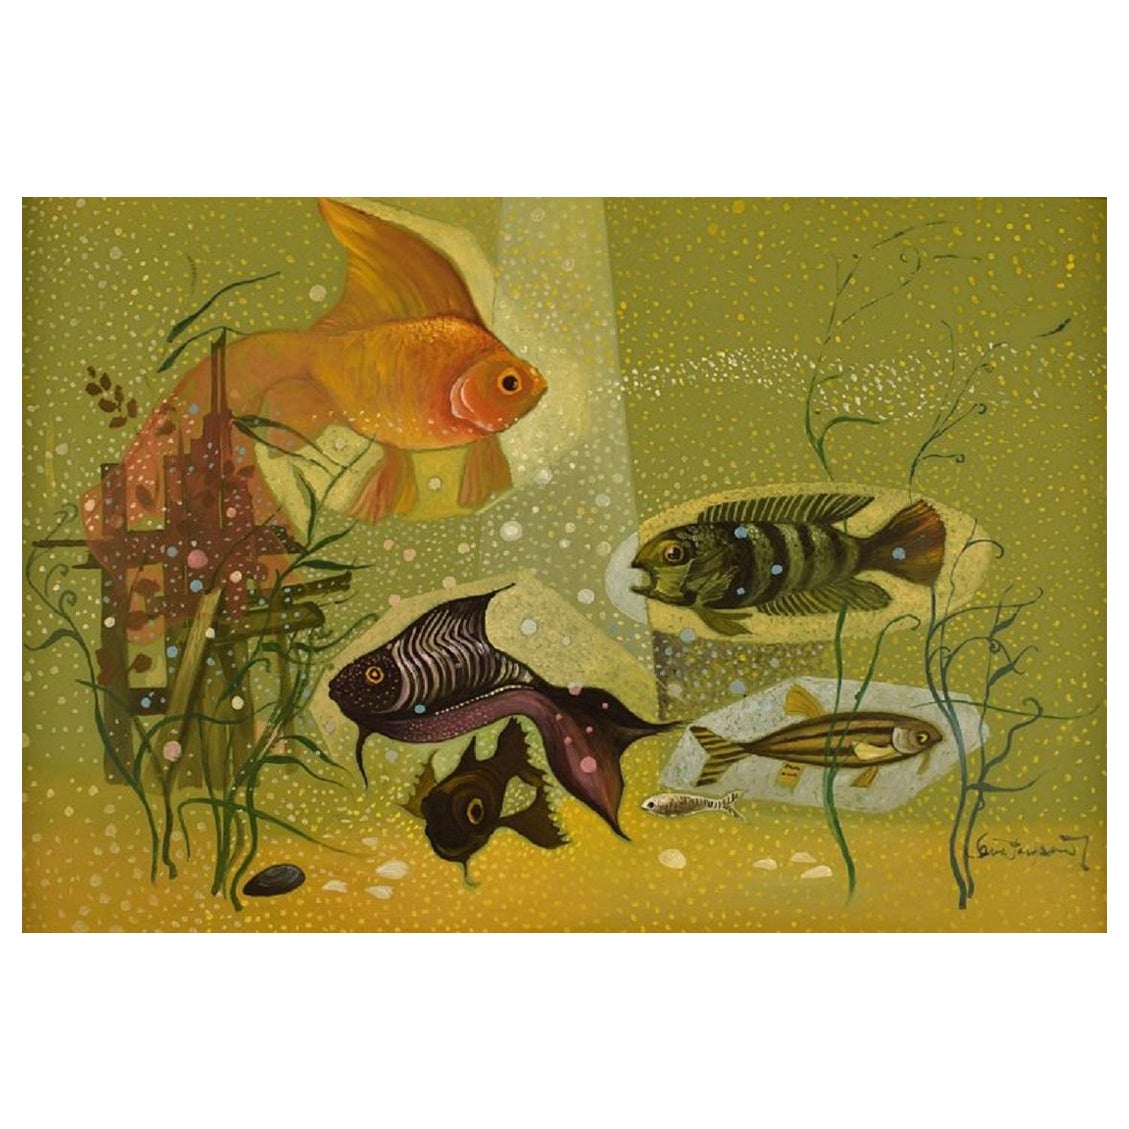 Ove Persson, Swedish Artist, Oil on Board, "Aquarium" For Sale